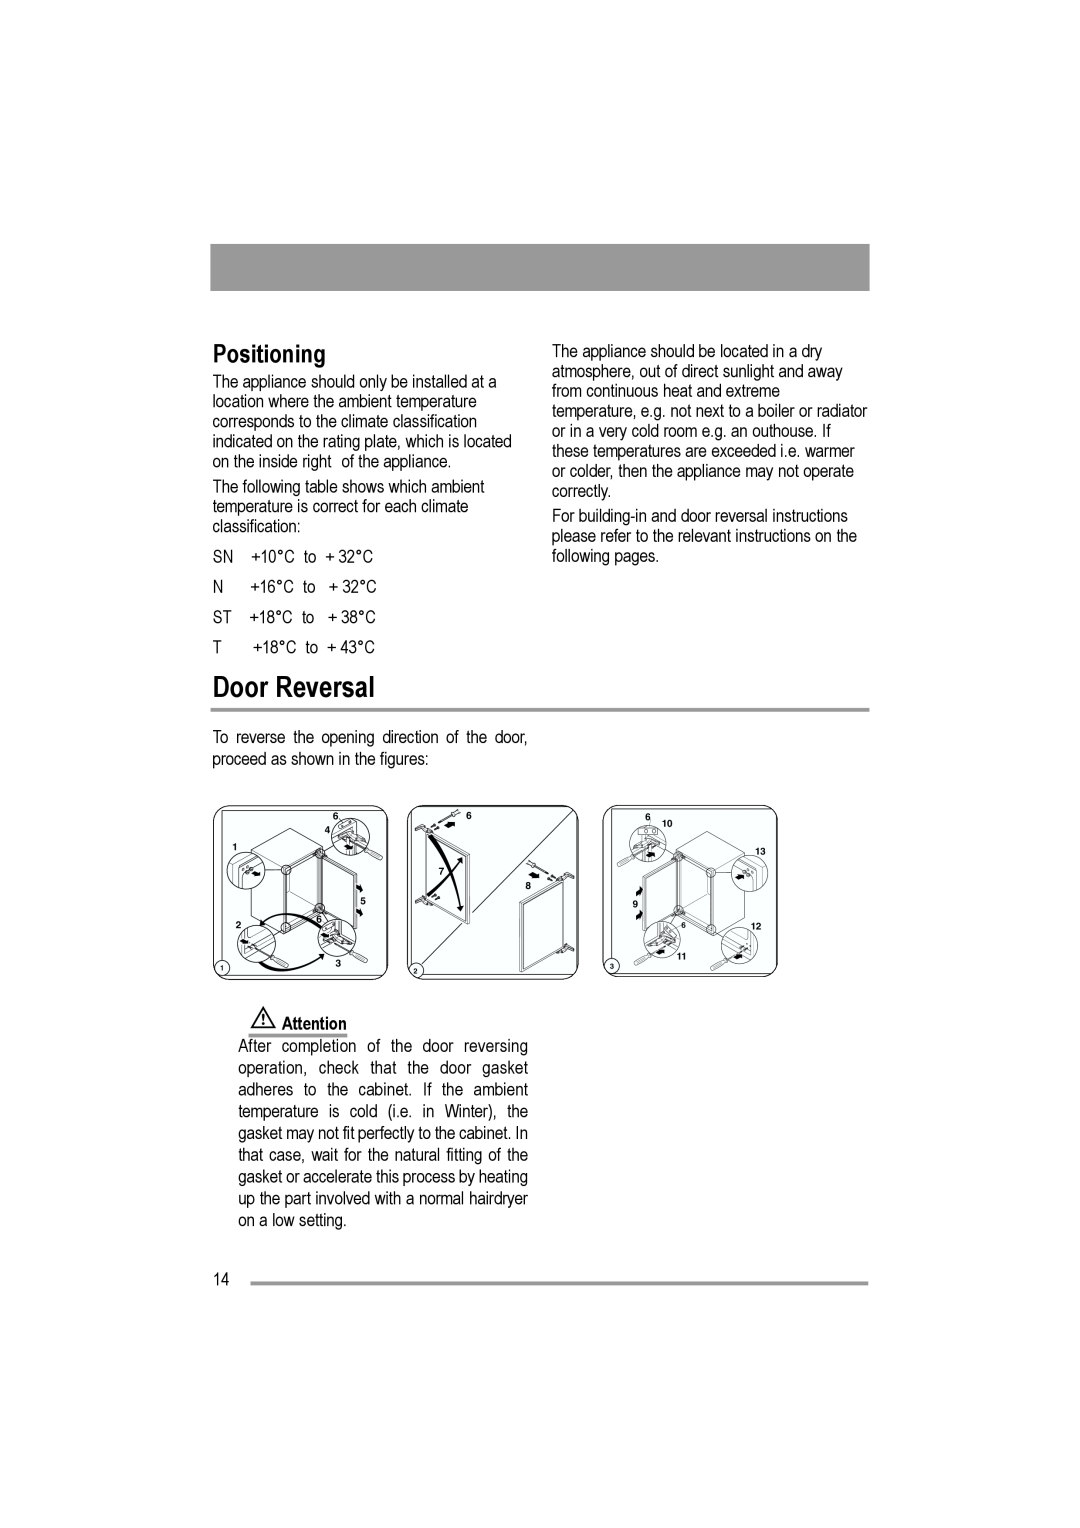 Moffat MUL 514 user manual Door Reversal, Positioning 